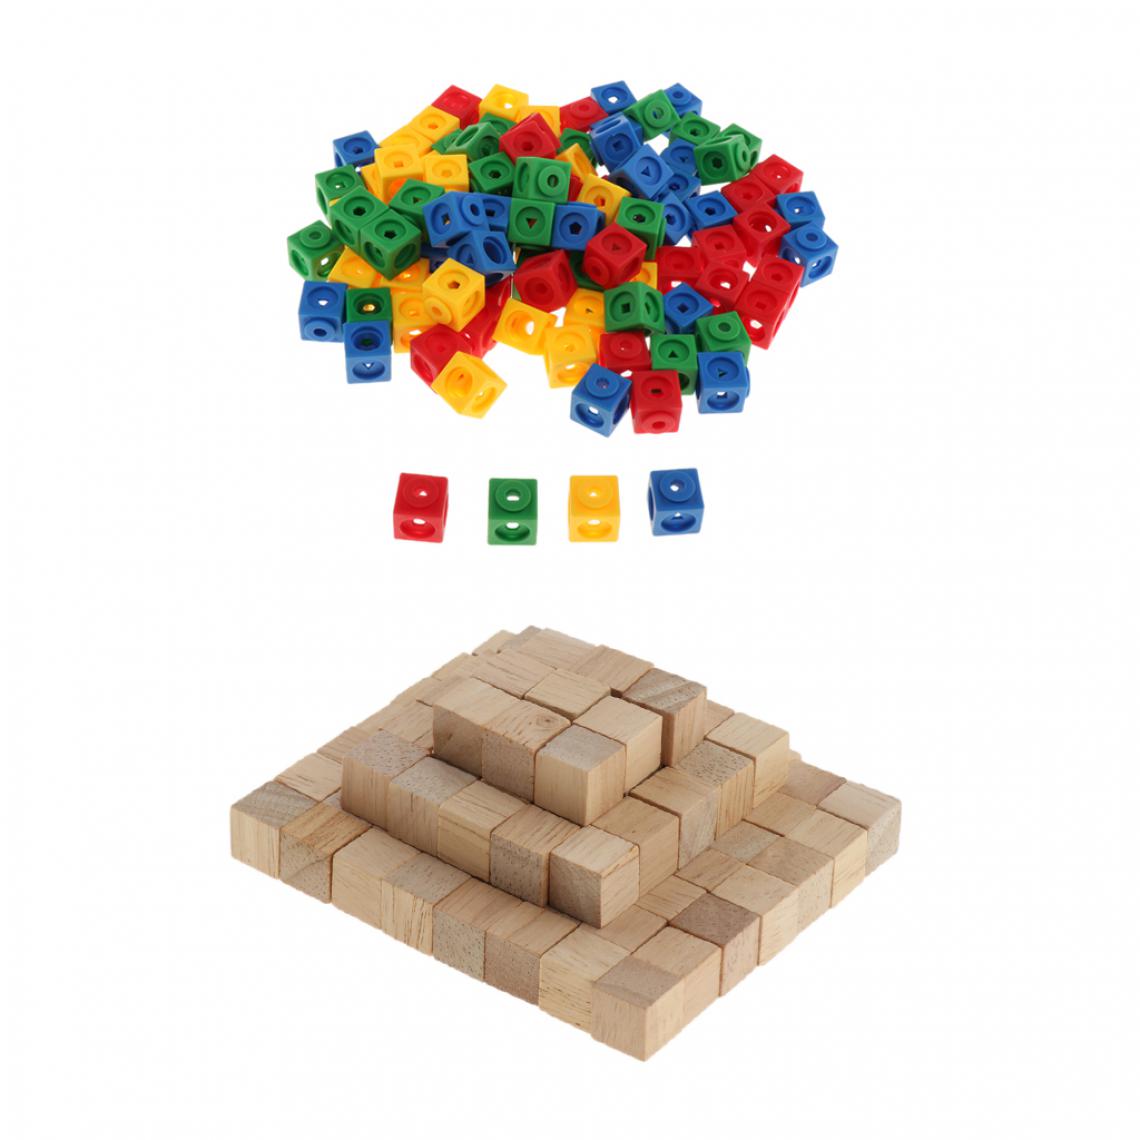 marque generique - 200pcs Jeux de Construction Jouet Educatif Montessori - 100 Pièces Compteurs Mathlink Cubes + 100 Pièces Cubes en Bois 2cm - Jeux éducatifs